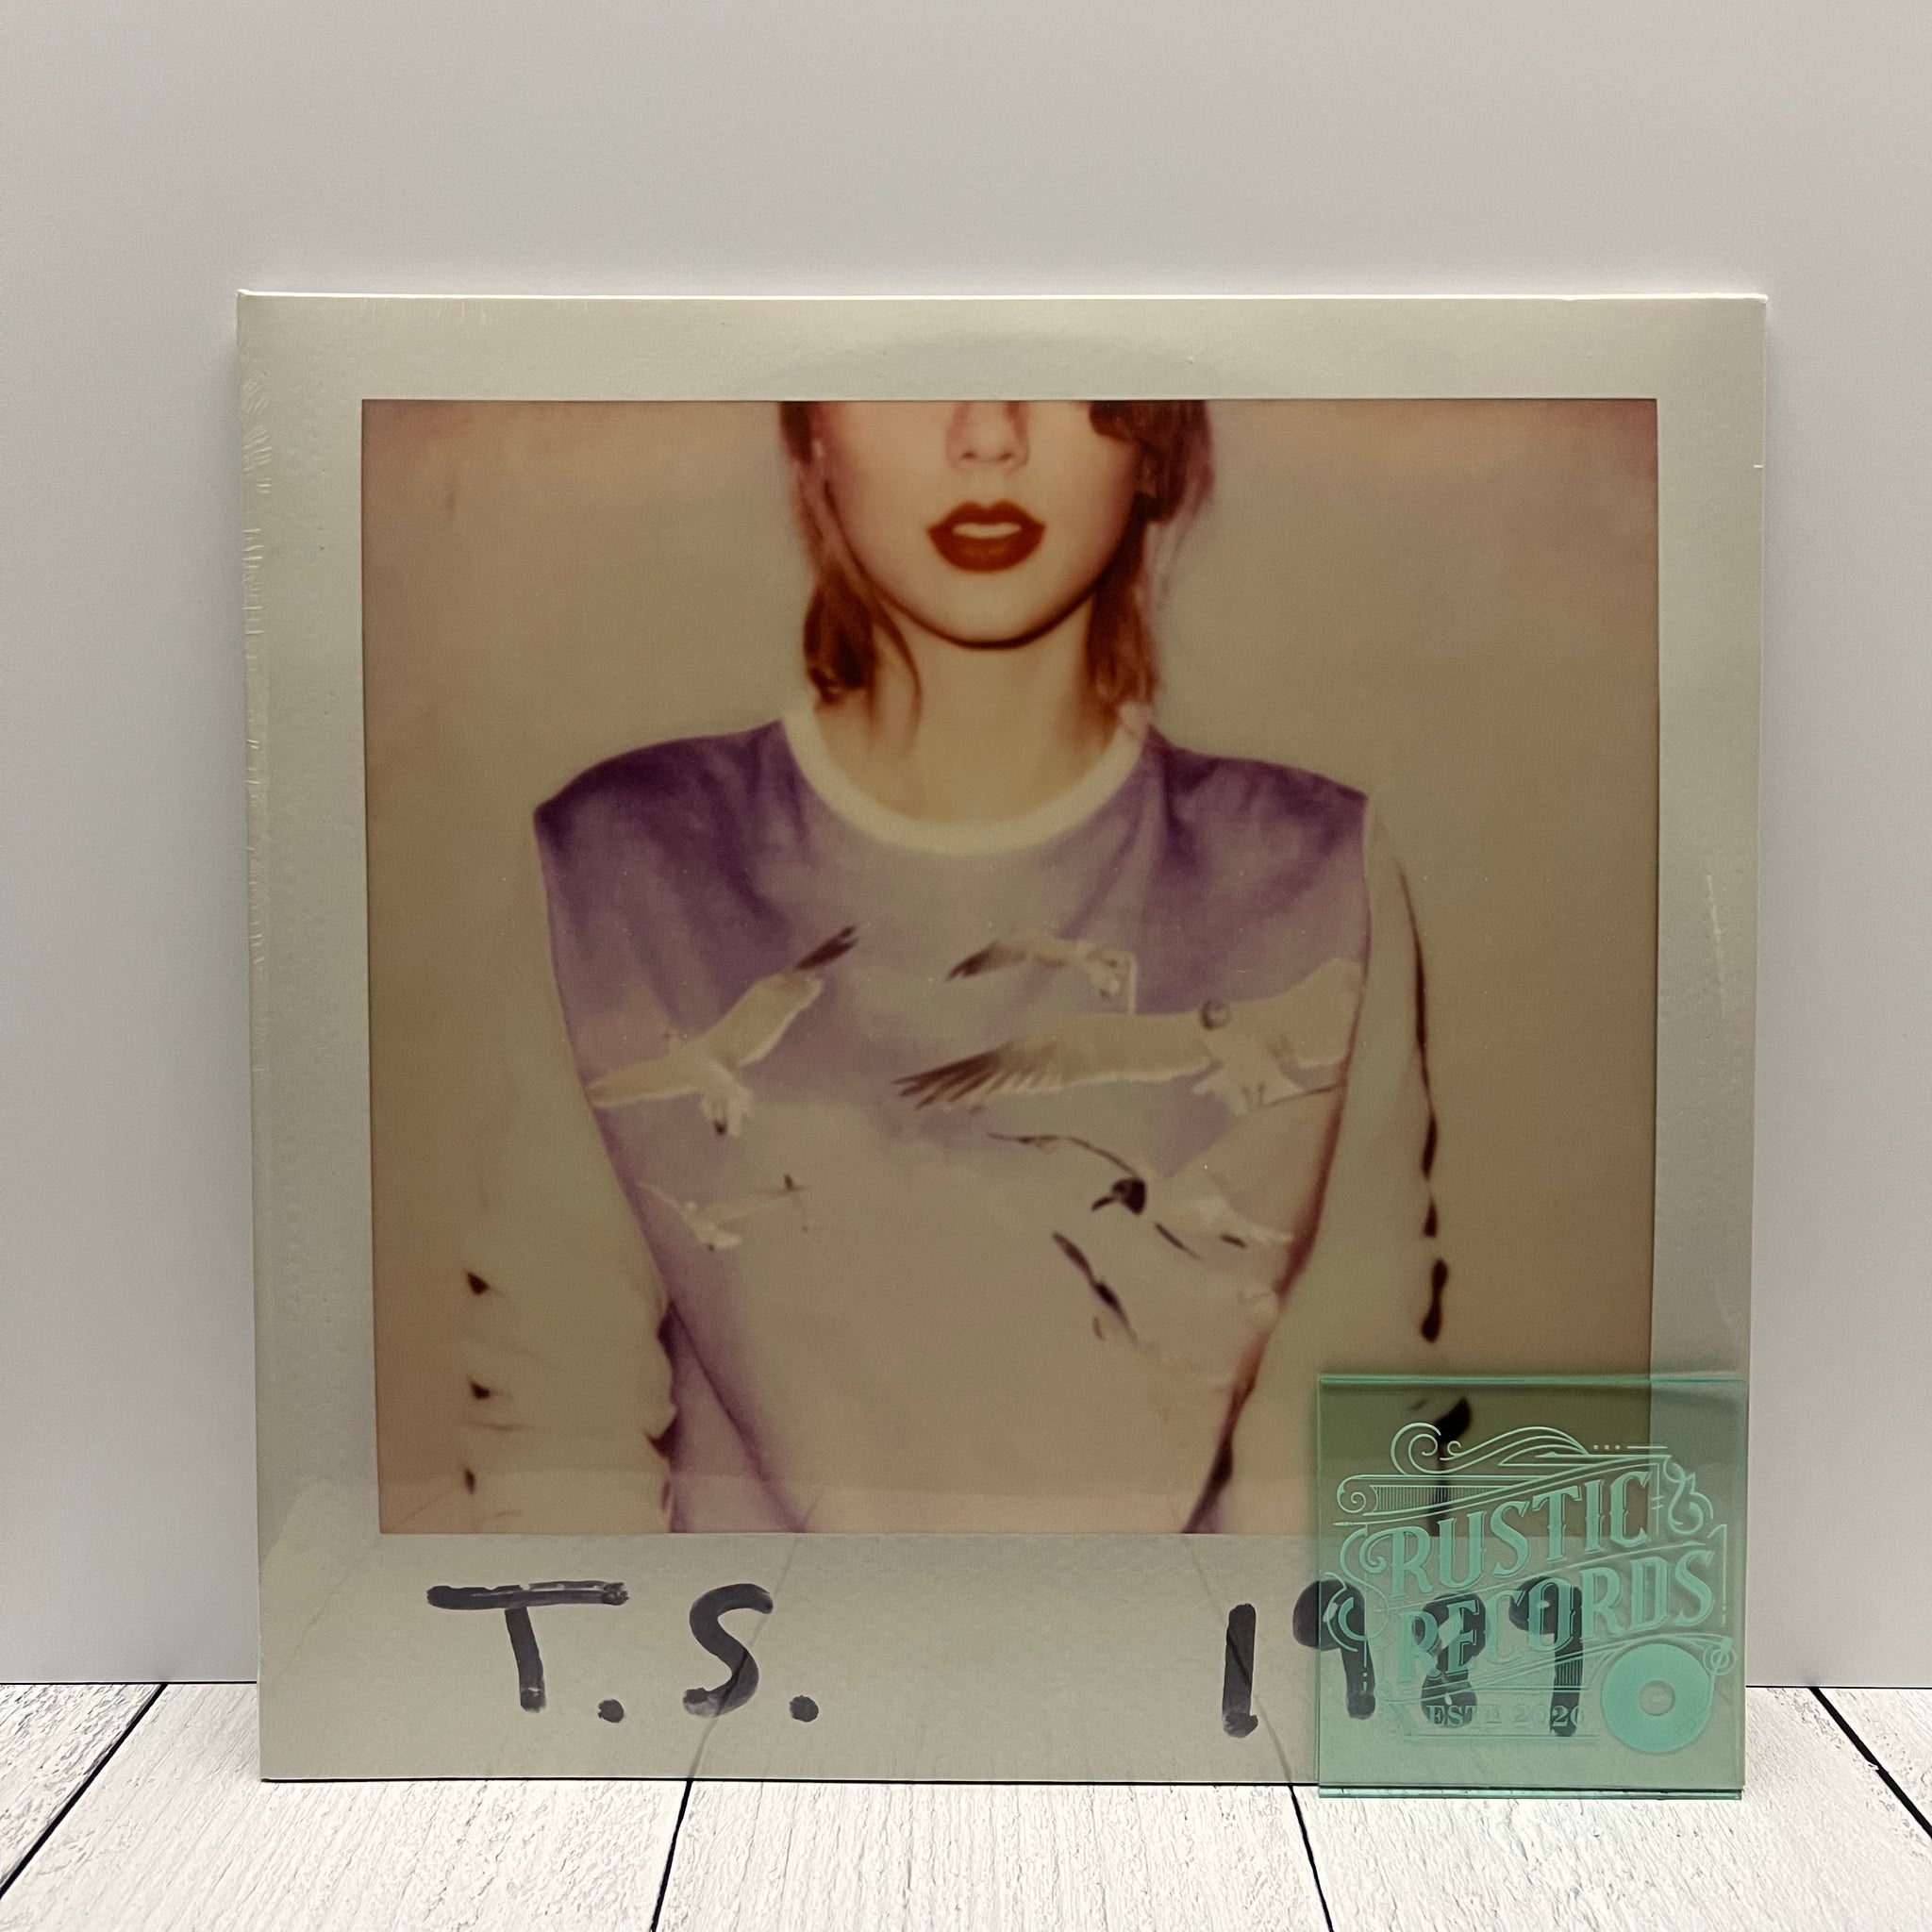 Taylor Swift - 1989 (U.S. Pressing) (LIMIT 1 PER CUSTOMER)